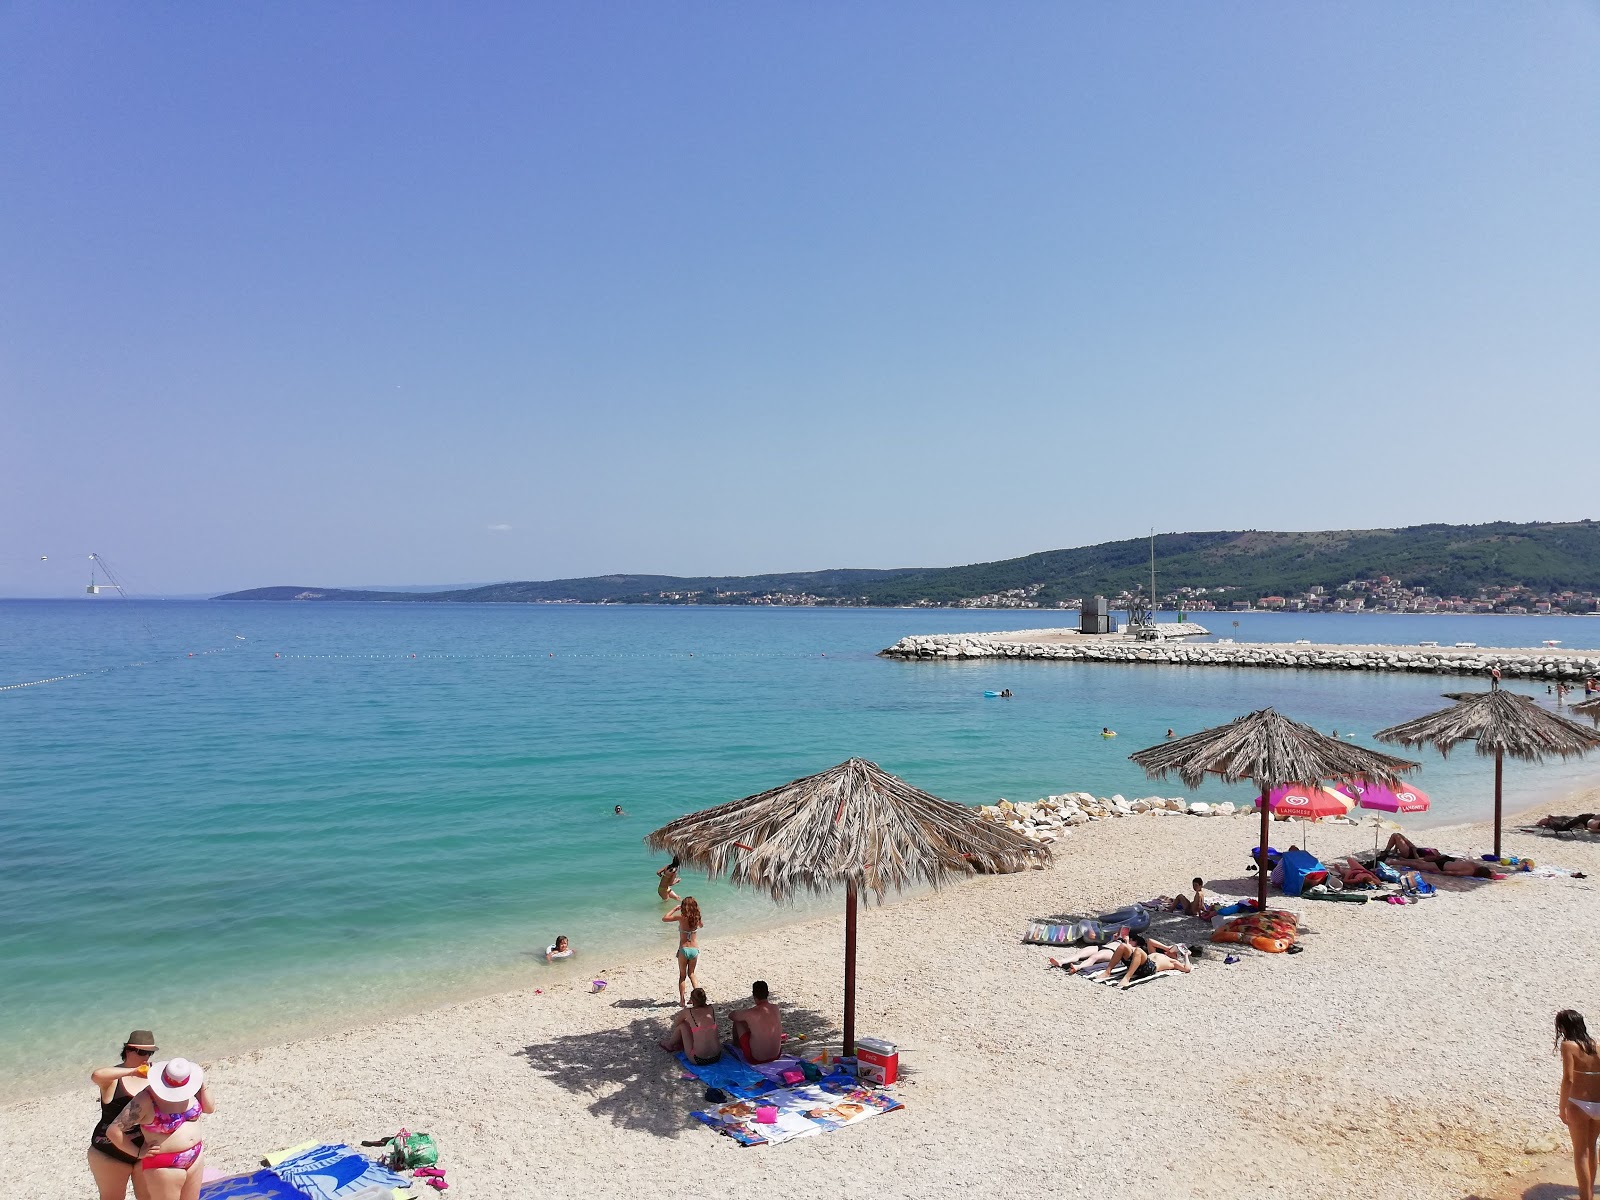 Divulje Plajı'in fotoğrafı hafif ince çakıl taş yüzey ile